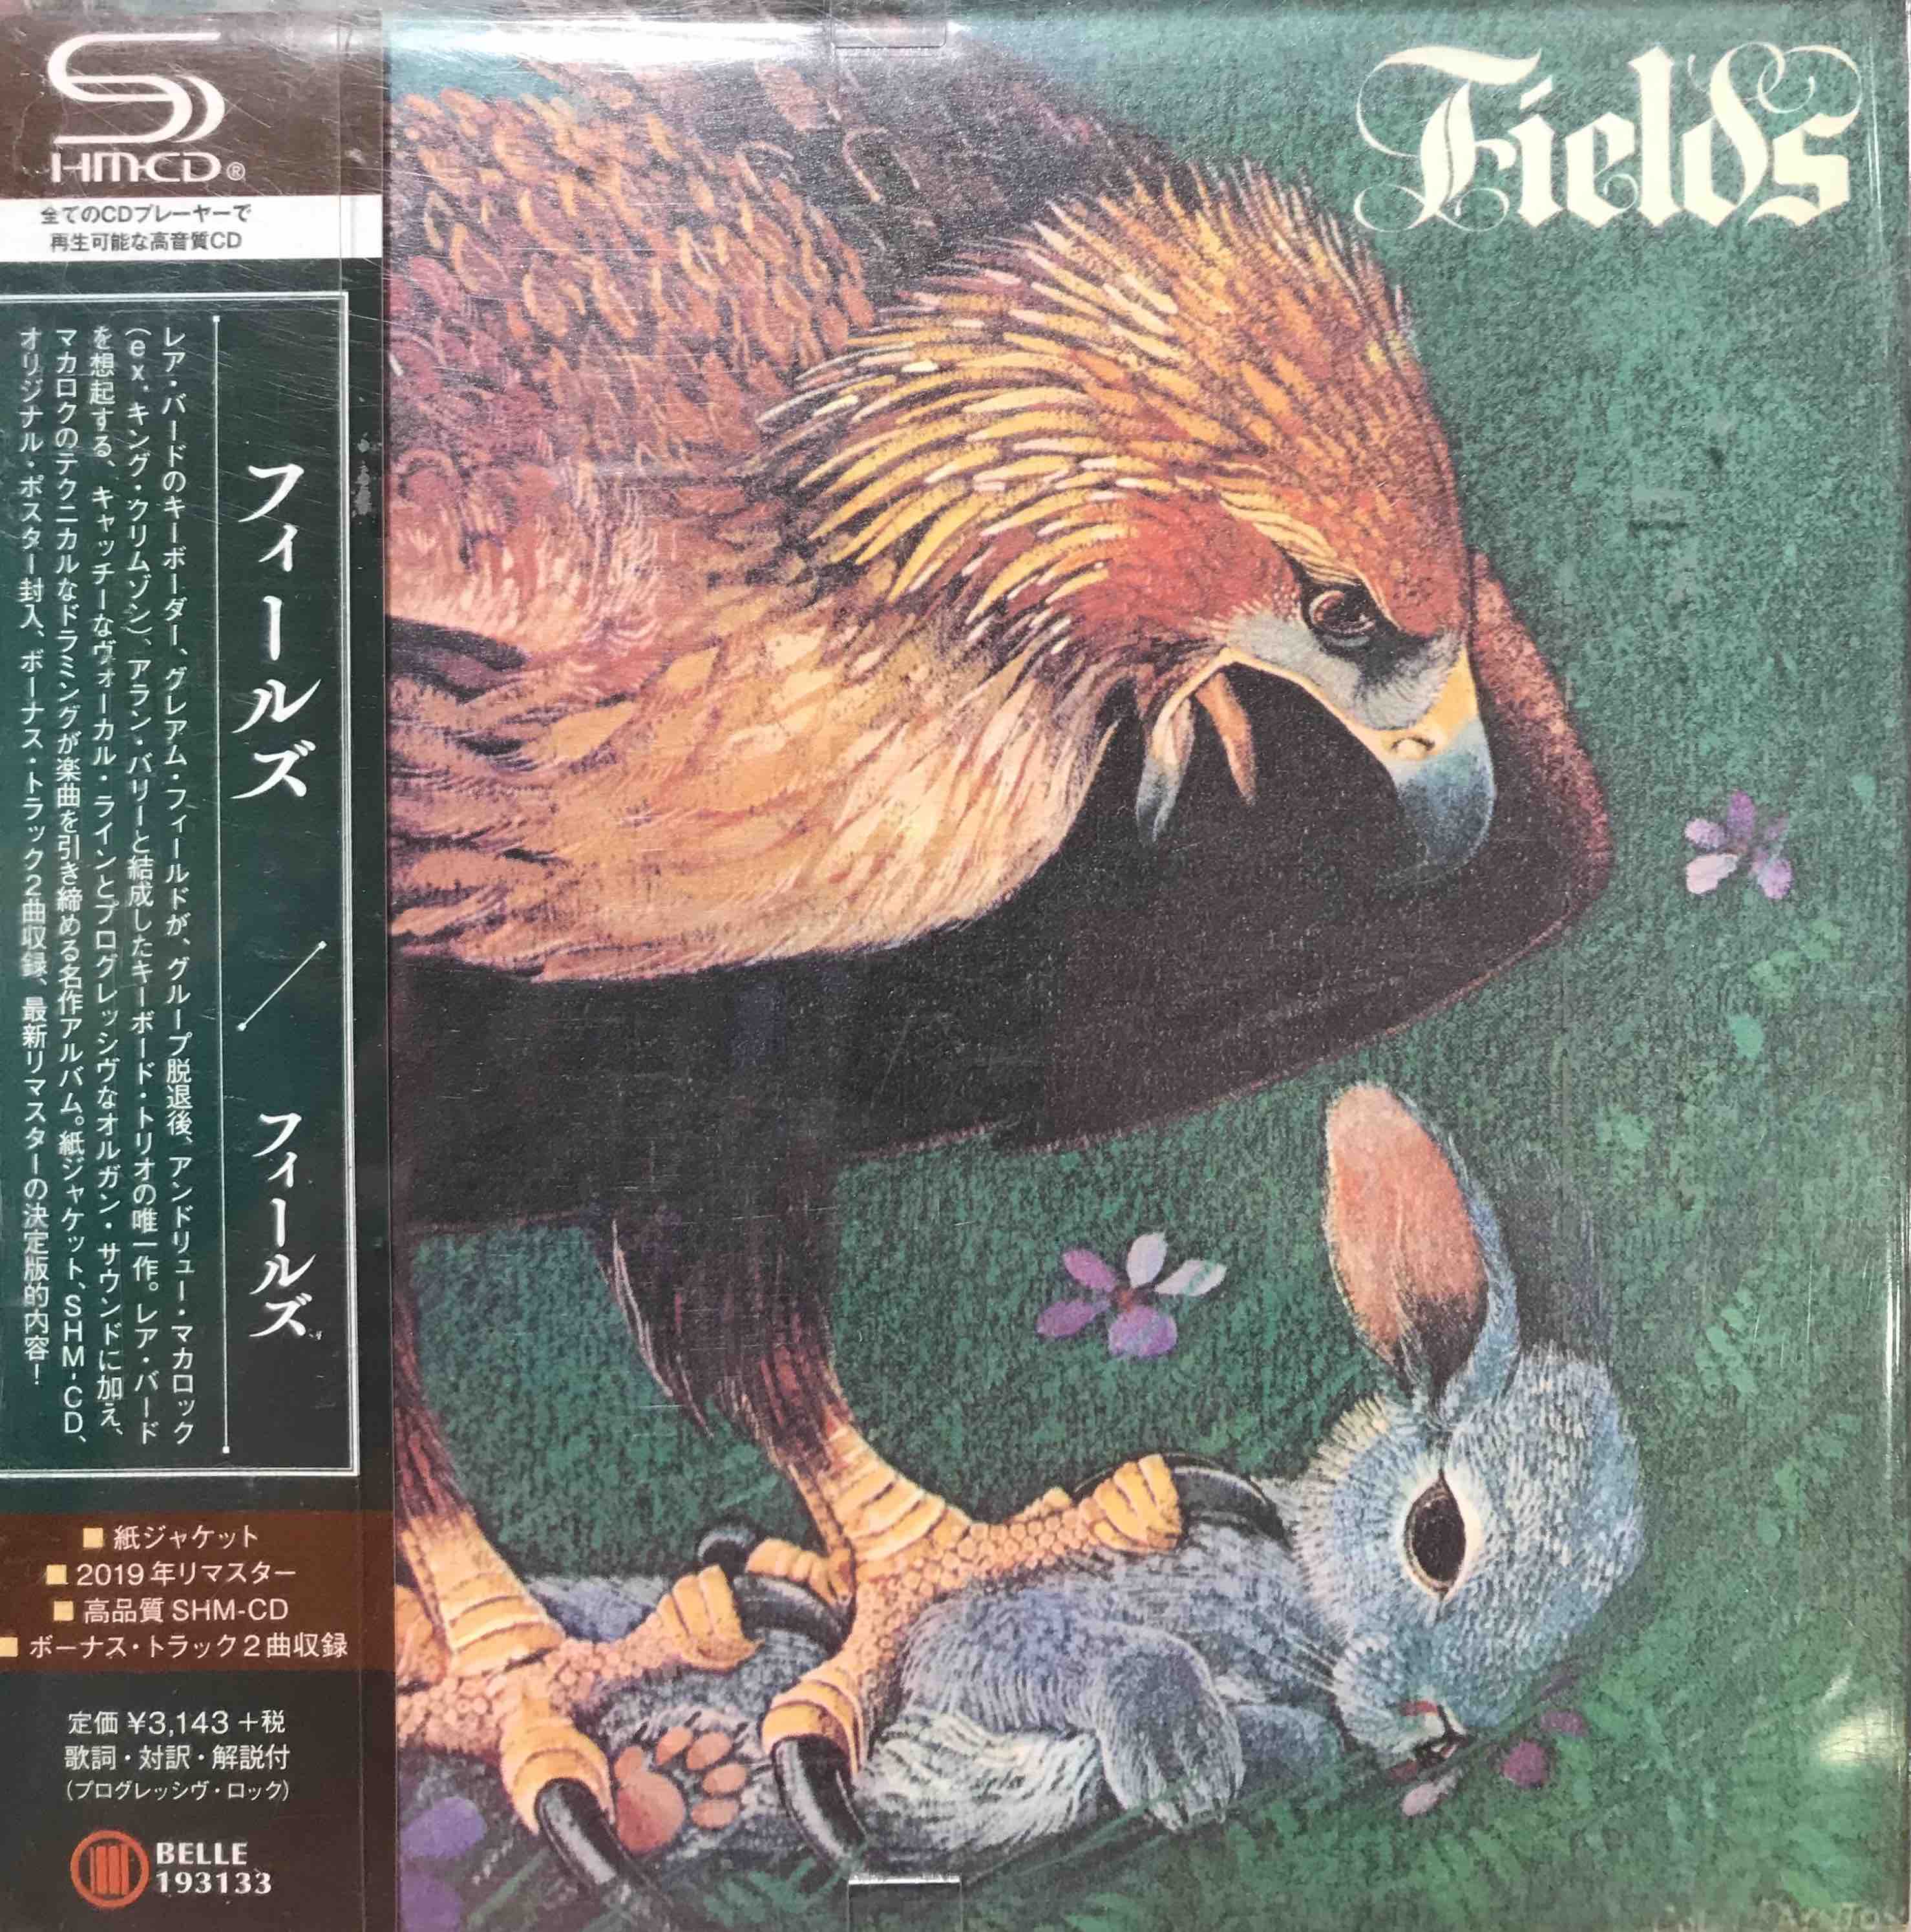 Fields ‎– Fields